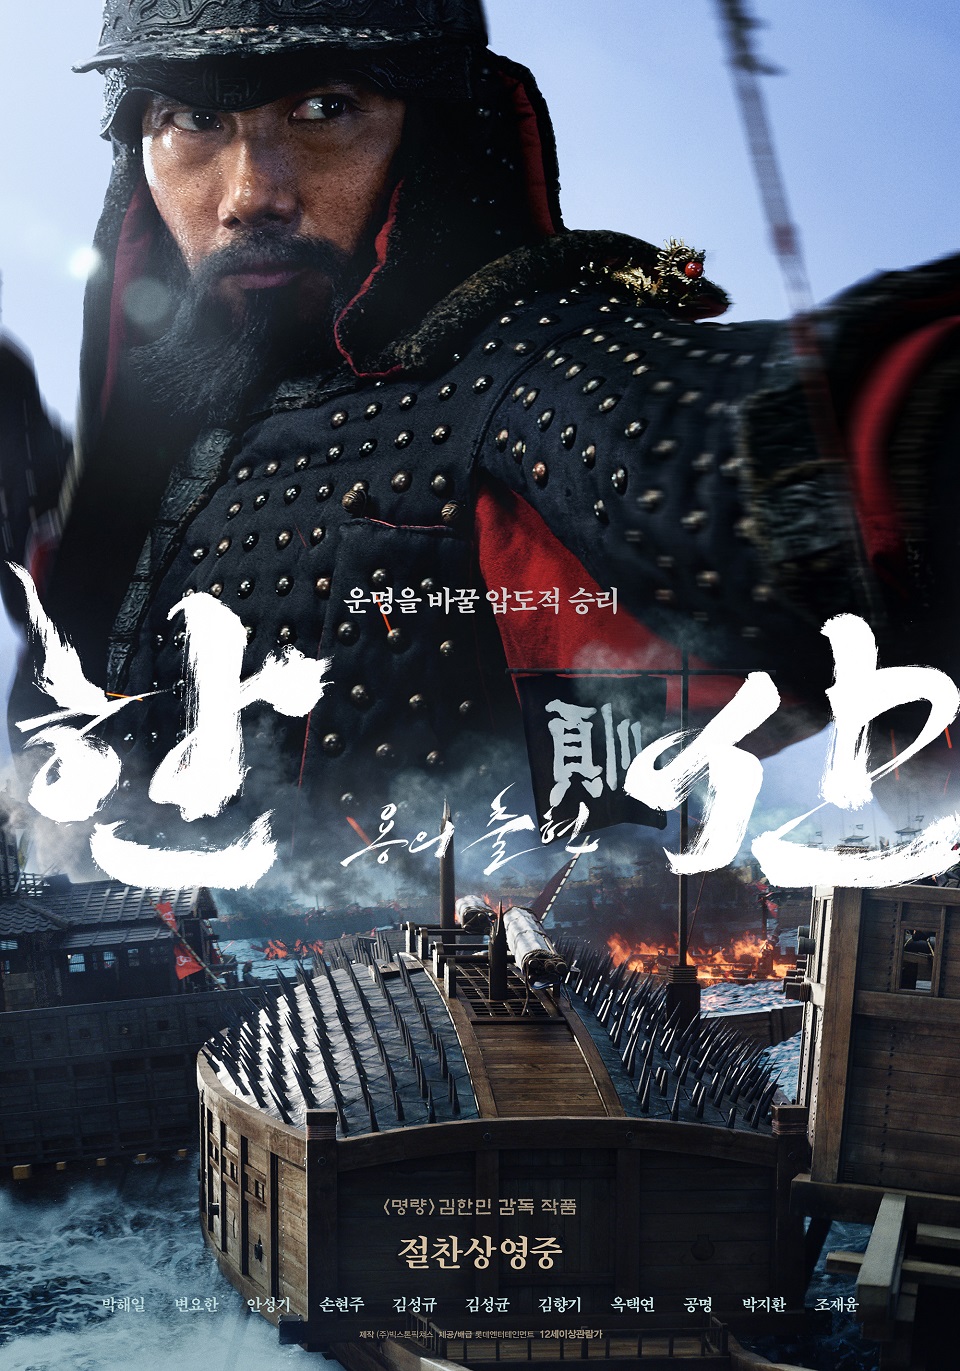 영화 '한산: 용의 출현' 메인 포스터